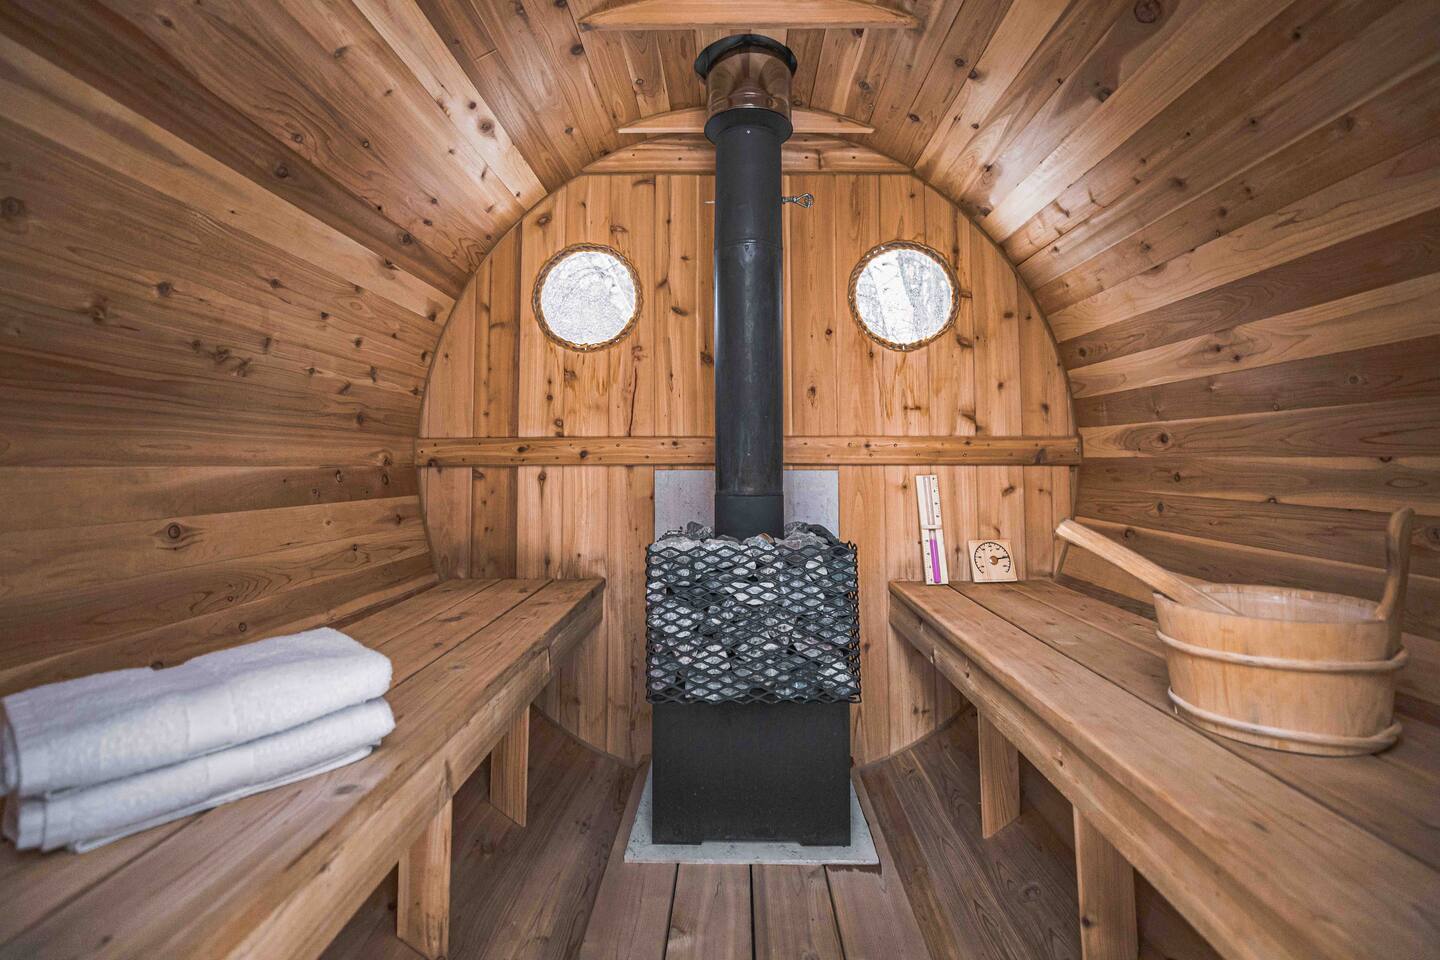 Inside the Sauna